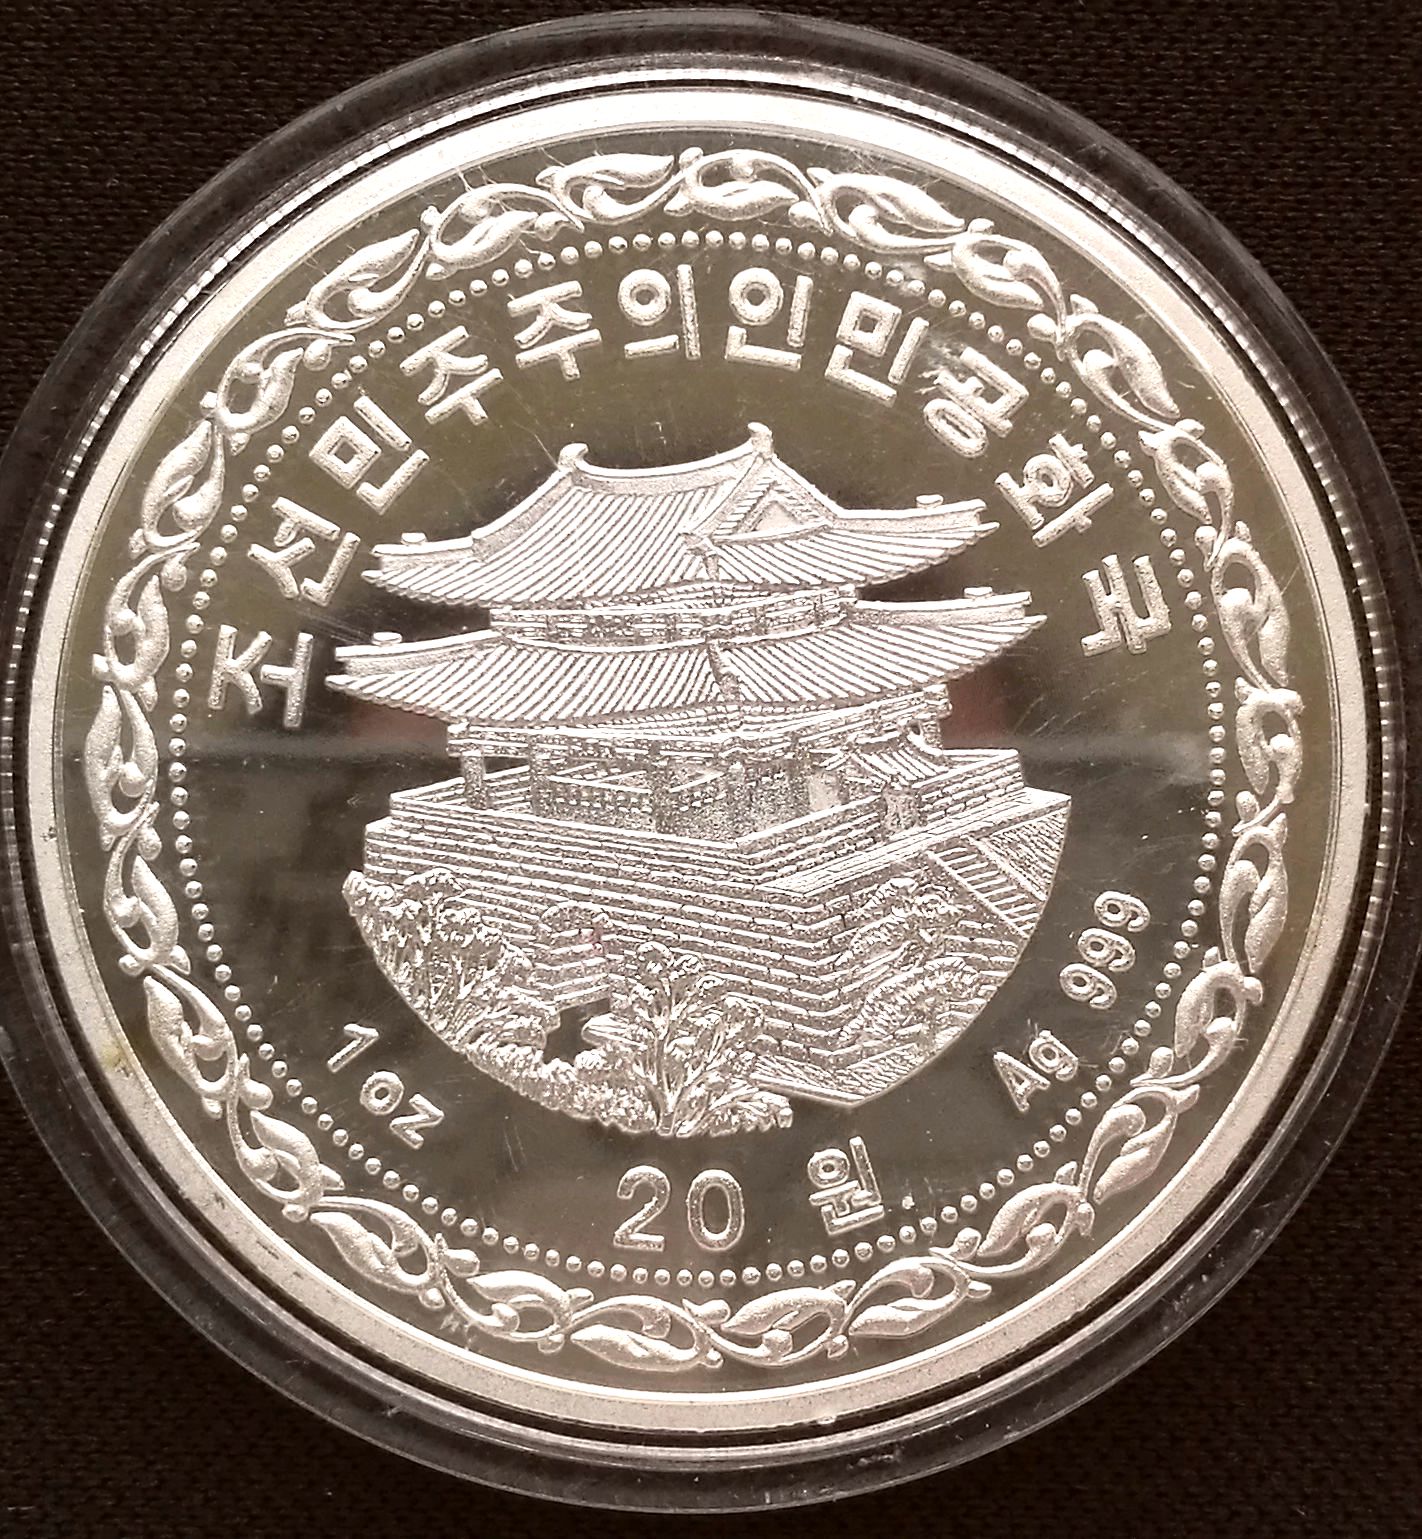 L3447, Korea "Monkey Year" Silver Coin 1 oz. 2016